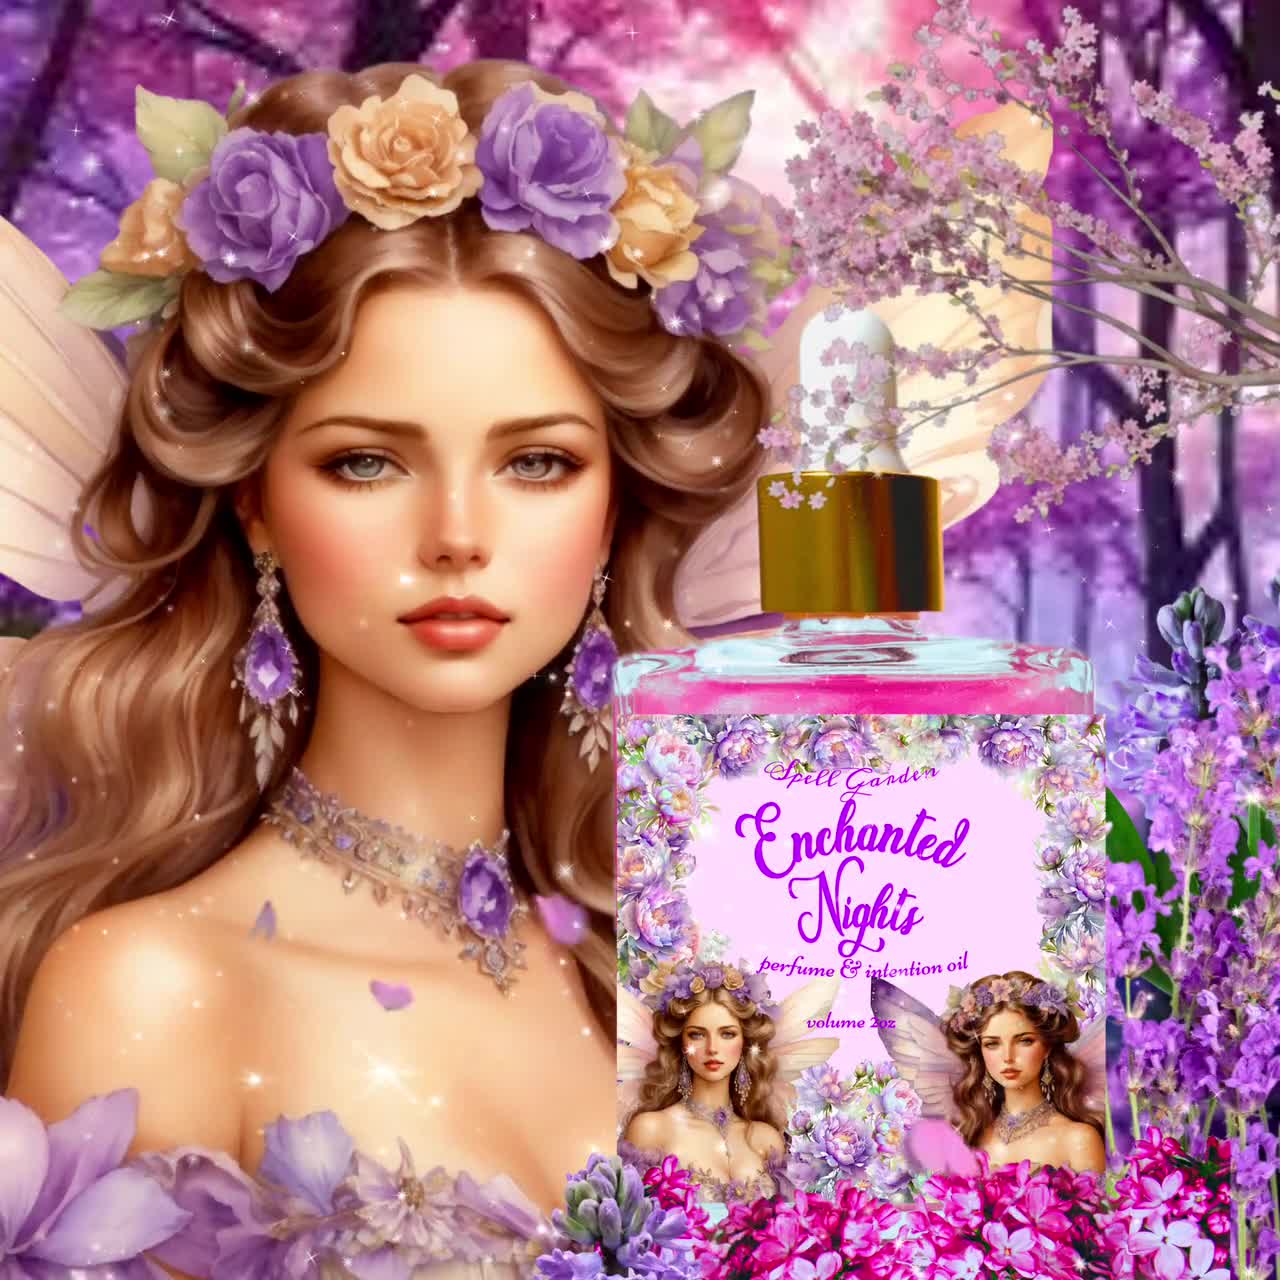 Fairy Dust for Women by Paris Hilton Eau de Parfum Spray 3.4 oz - GREAT  608940536278 | eBay